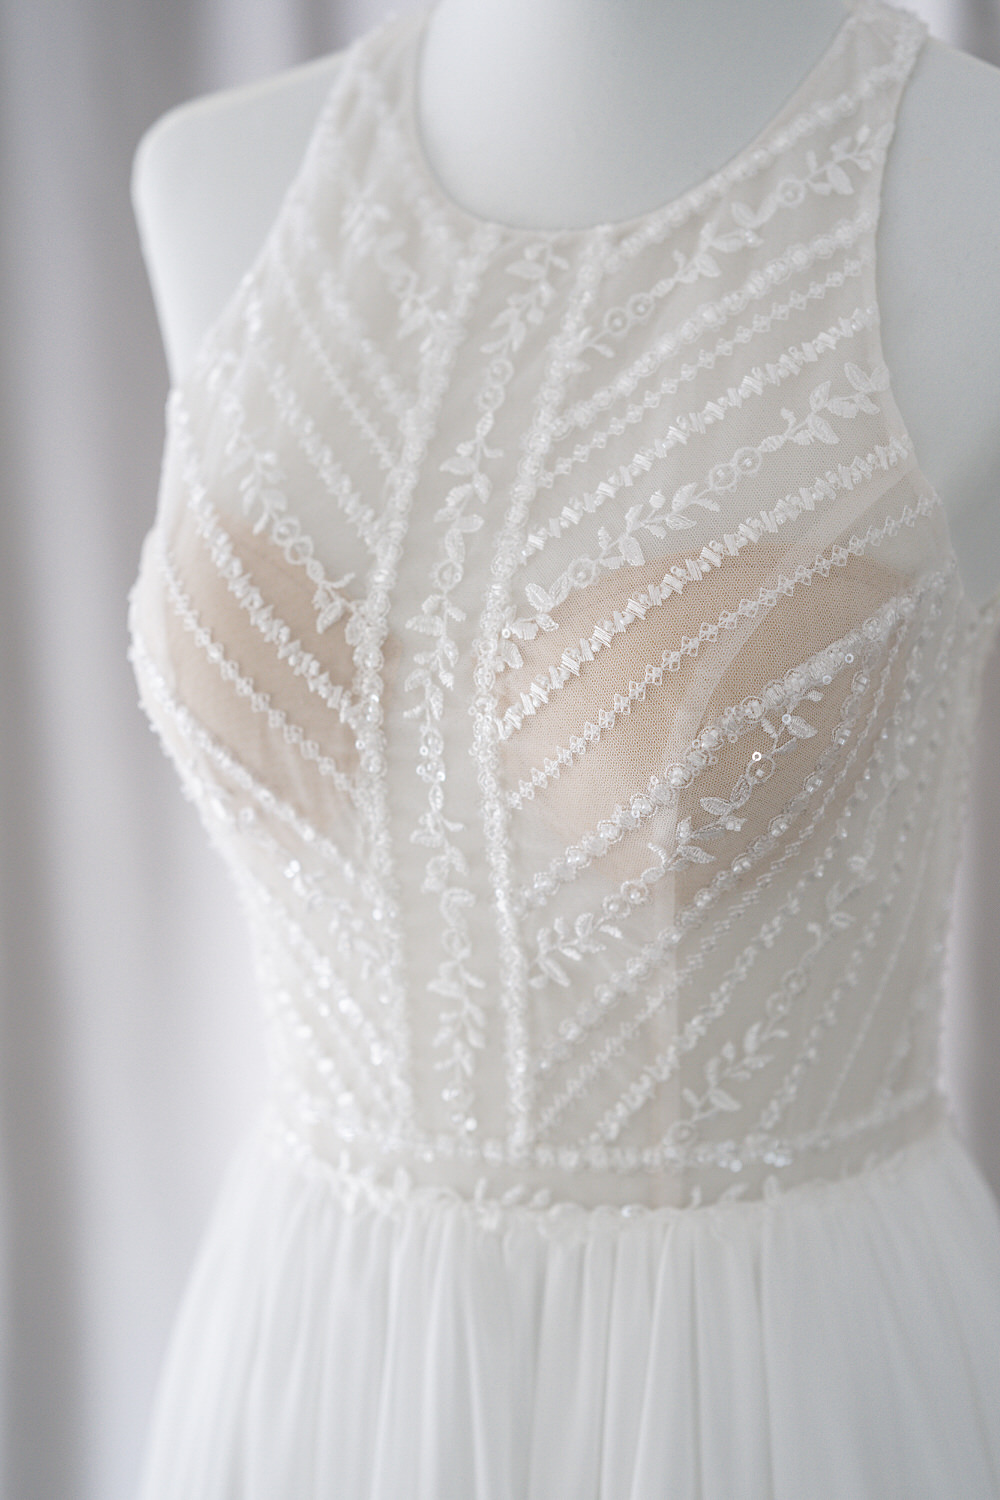 plung neckline lace ballgown rtw wedding gown manila